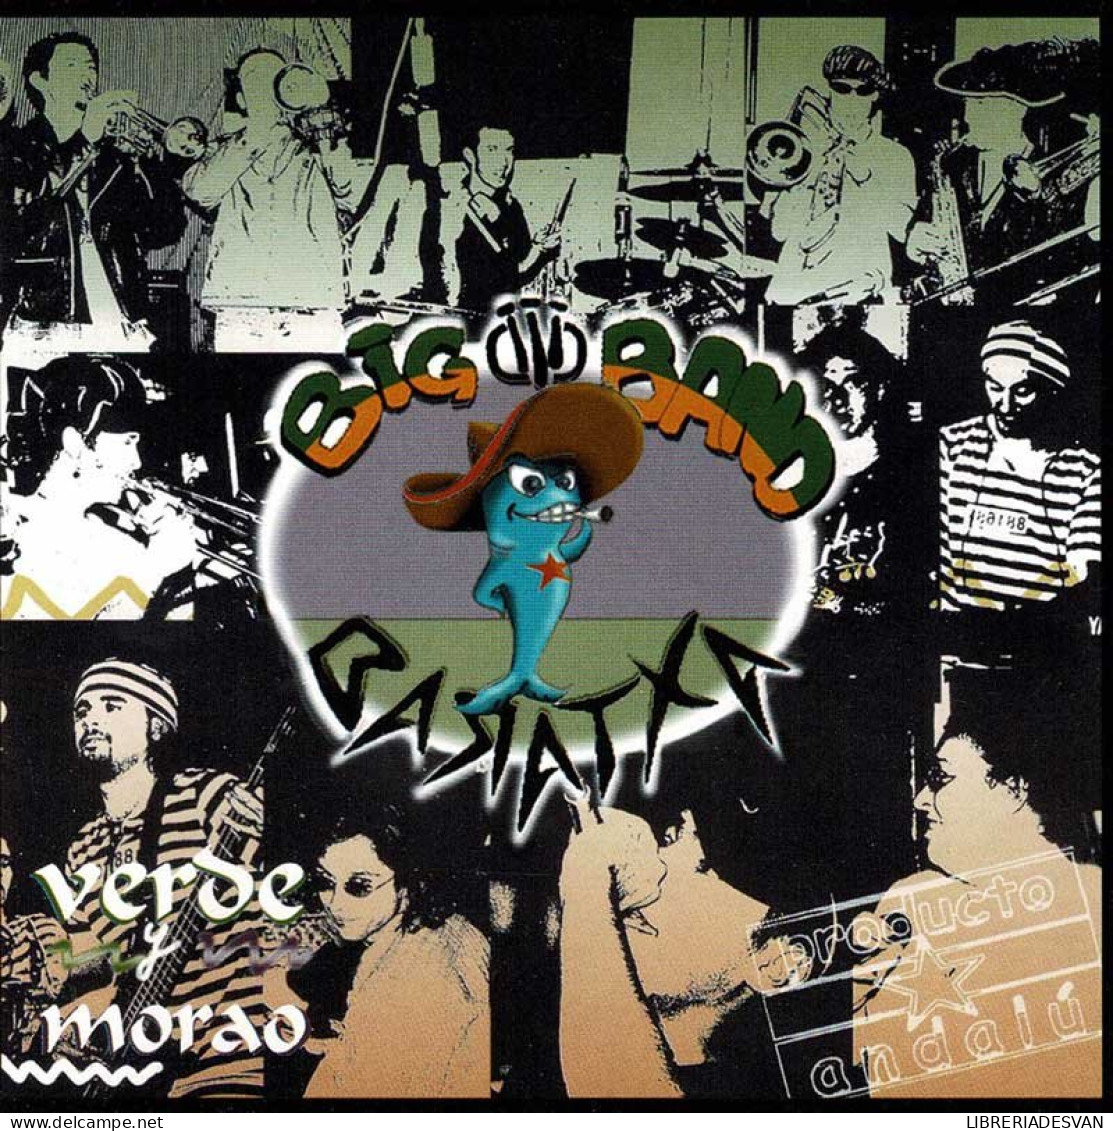 Big Band Baratxa - Verde Y Morao. CD - Rap & Hip Hop